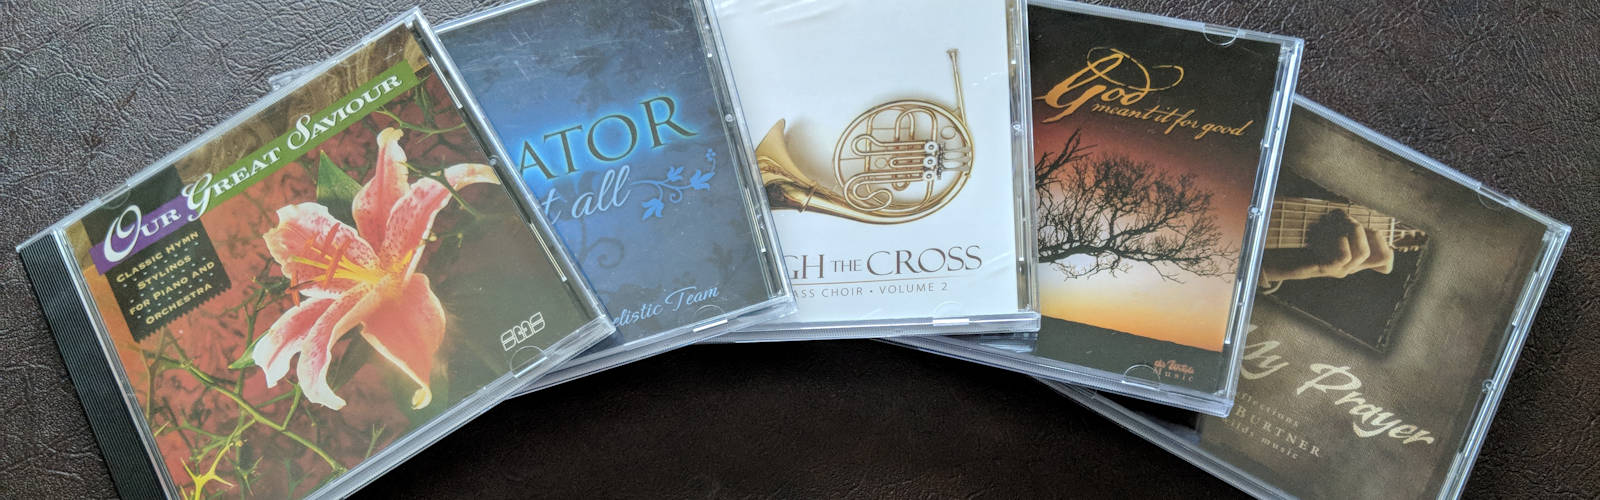 CD Quality Sacred Christian Music